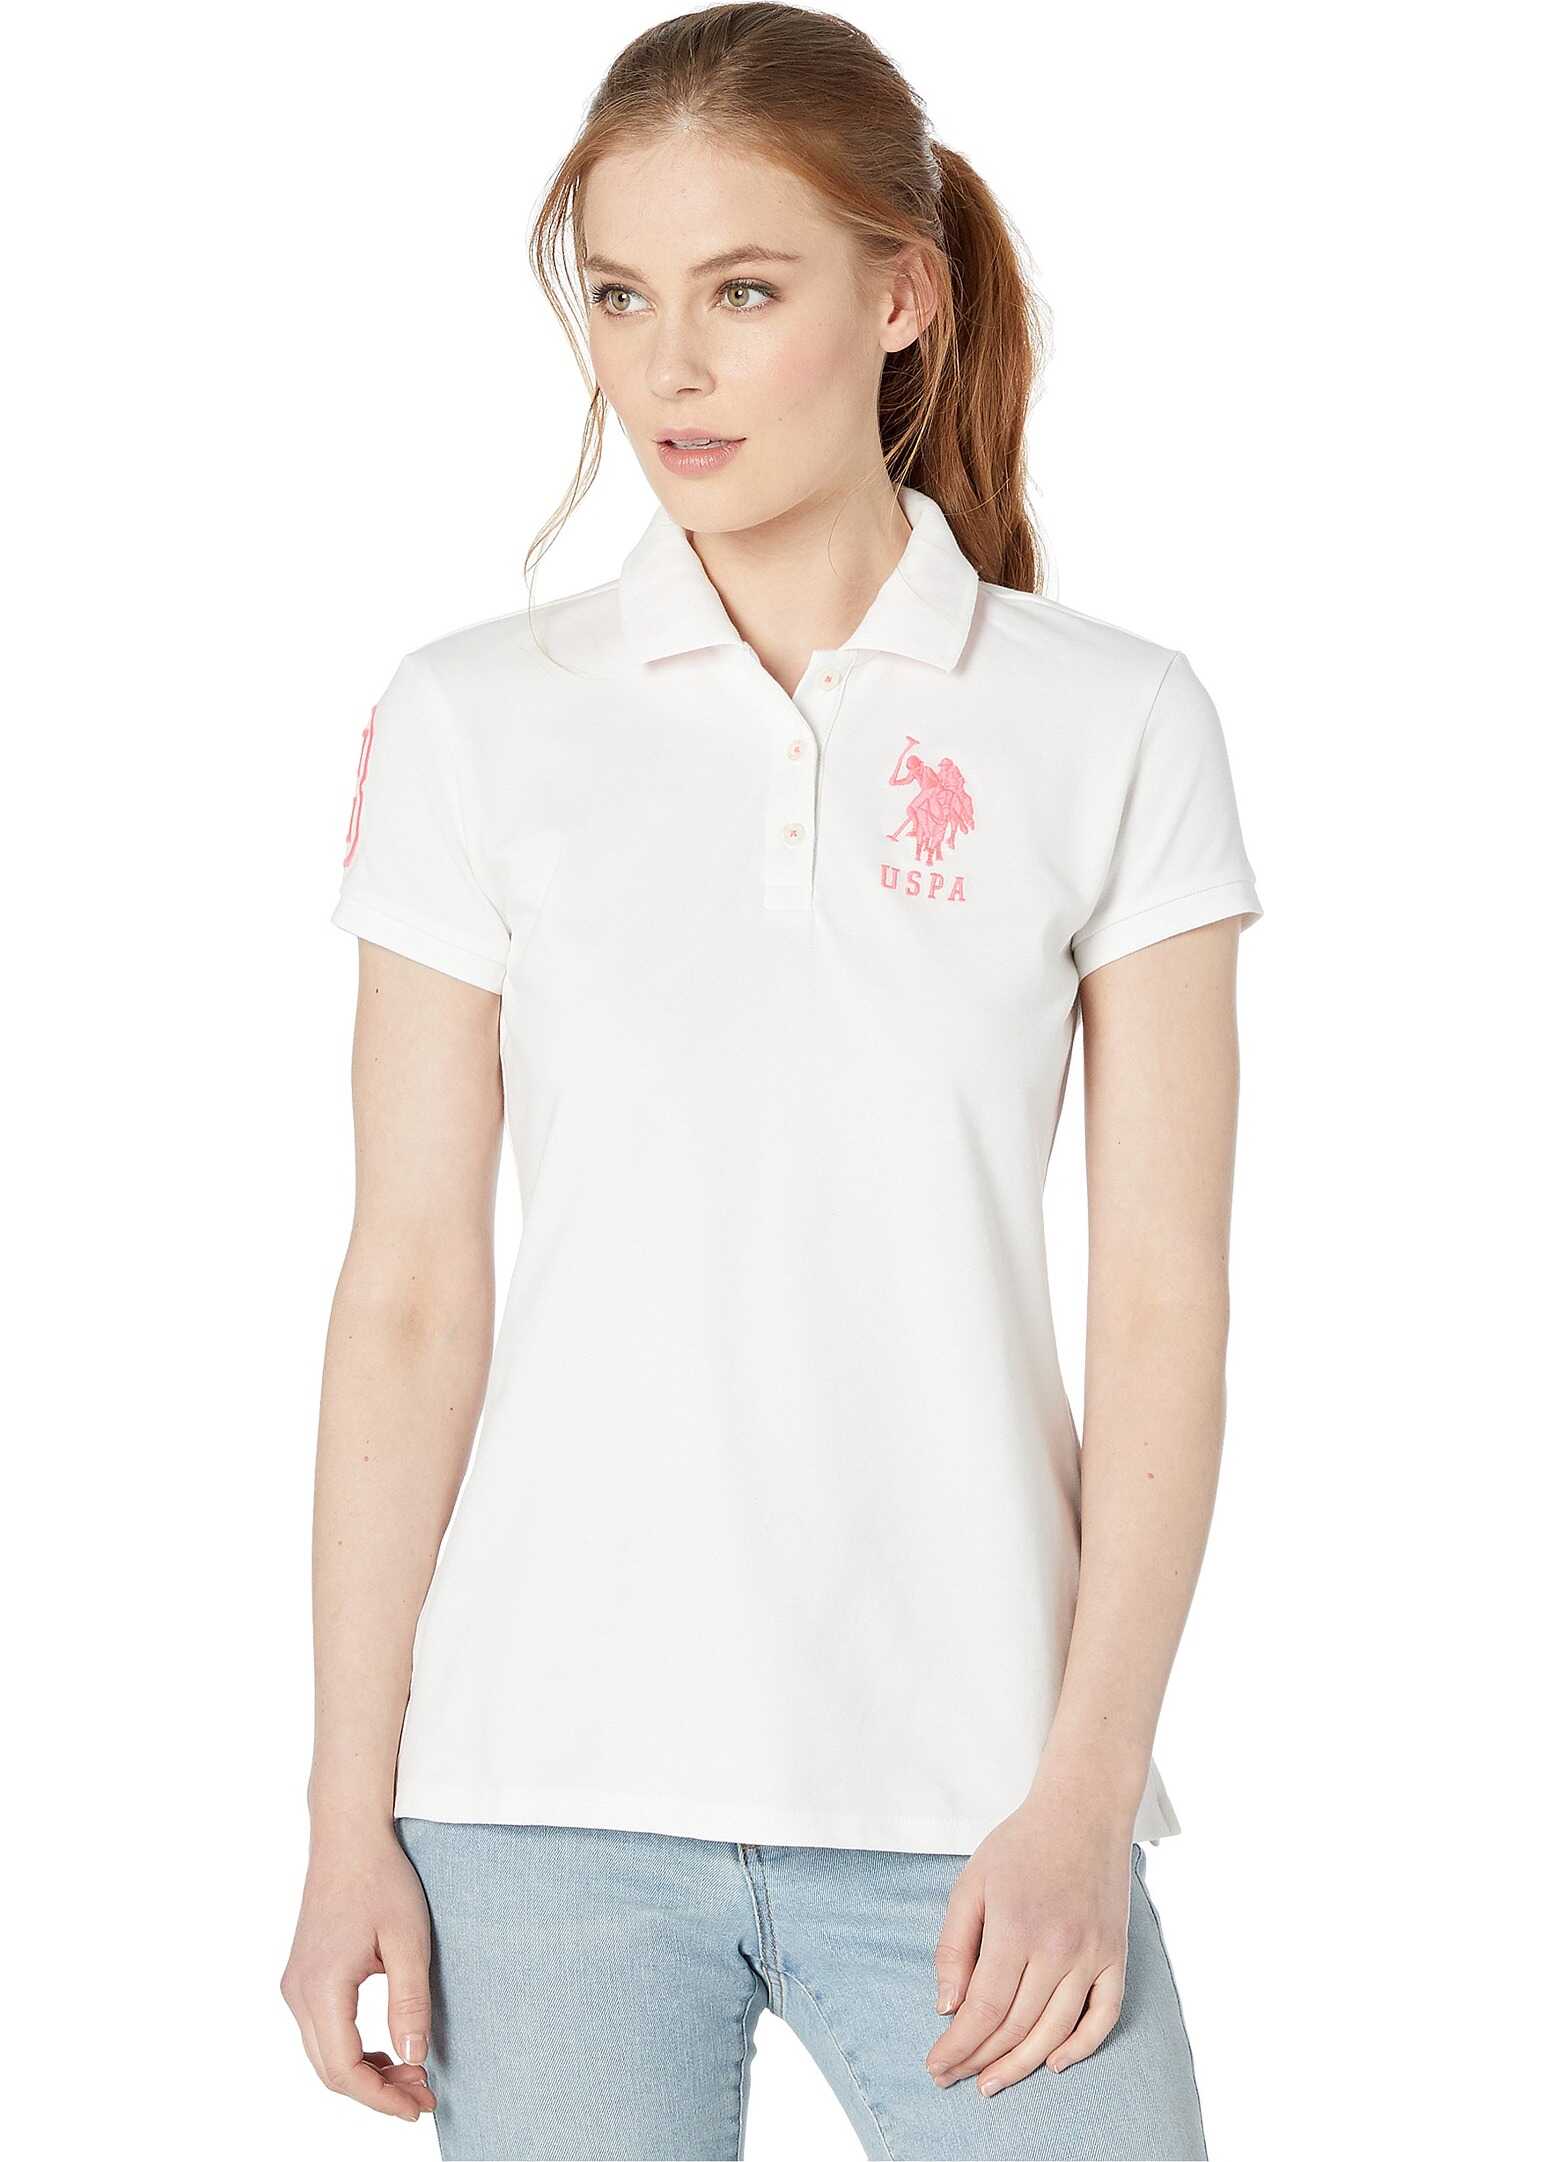 U.S. POLO ASSN. Neon Logos Short Sleeve Polo Shirt Fresh White